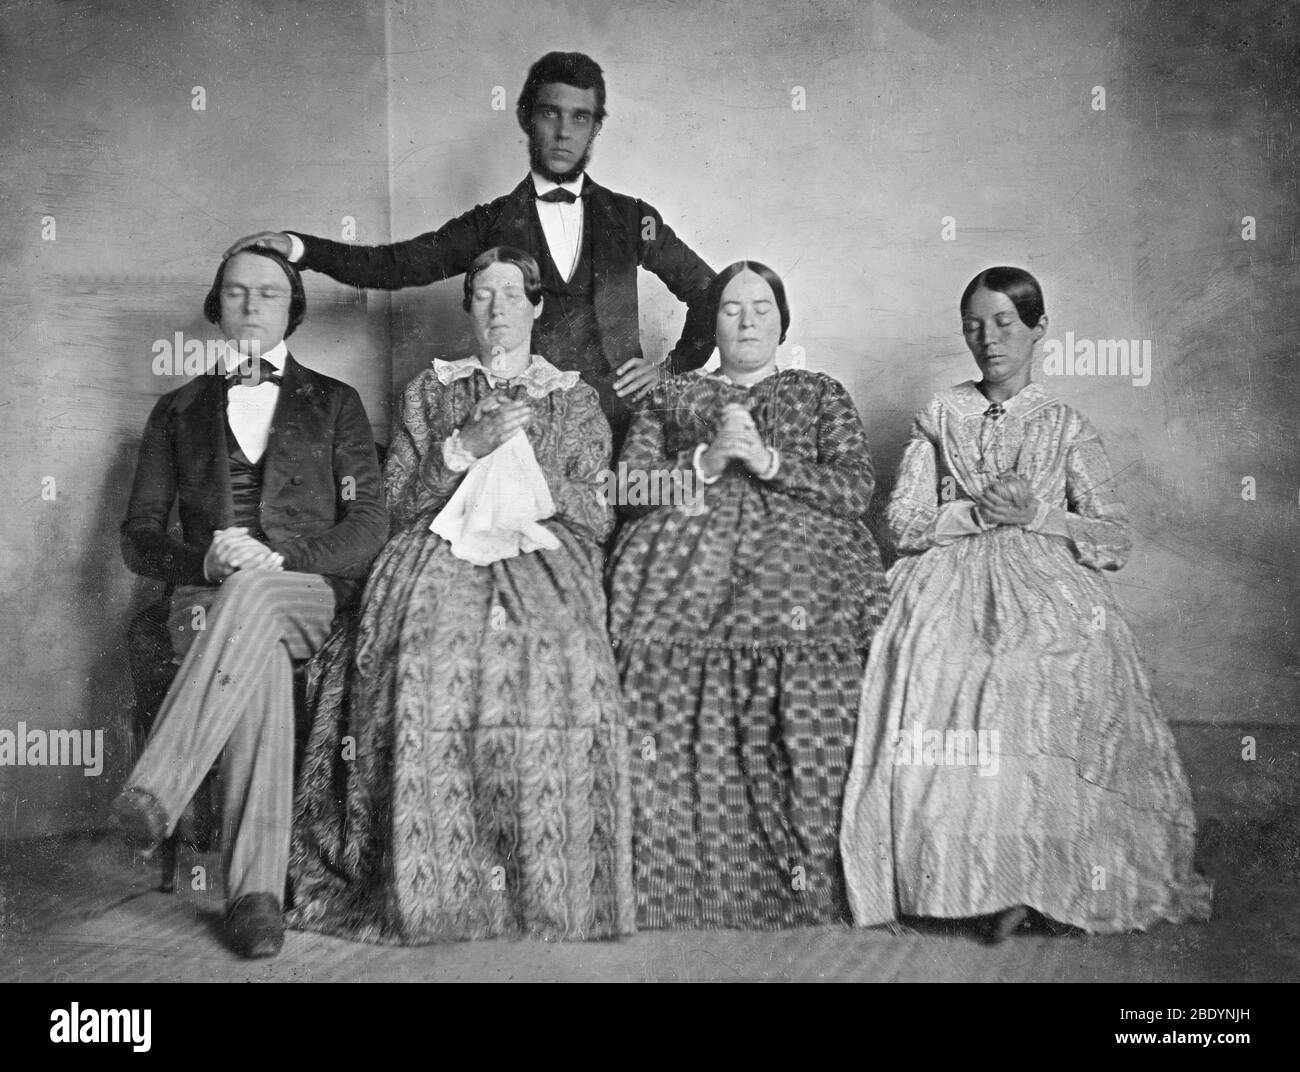 Hypnotist with Four Hypnotized Subjects, 1845 Stock Photo